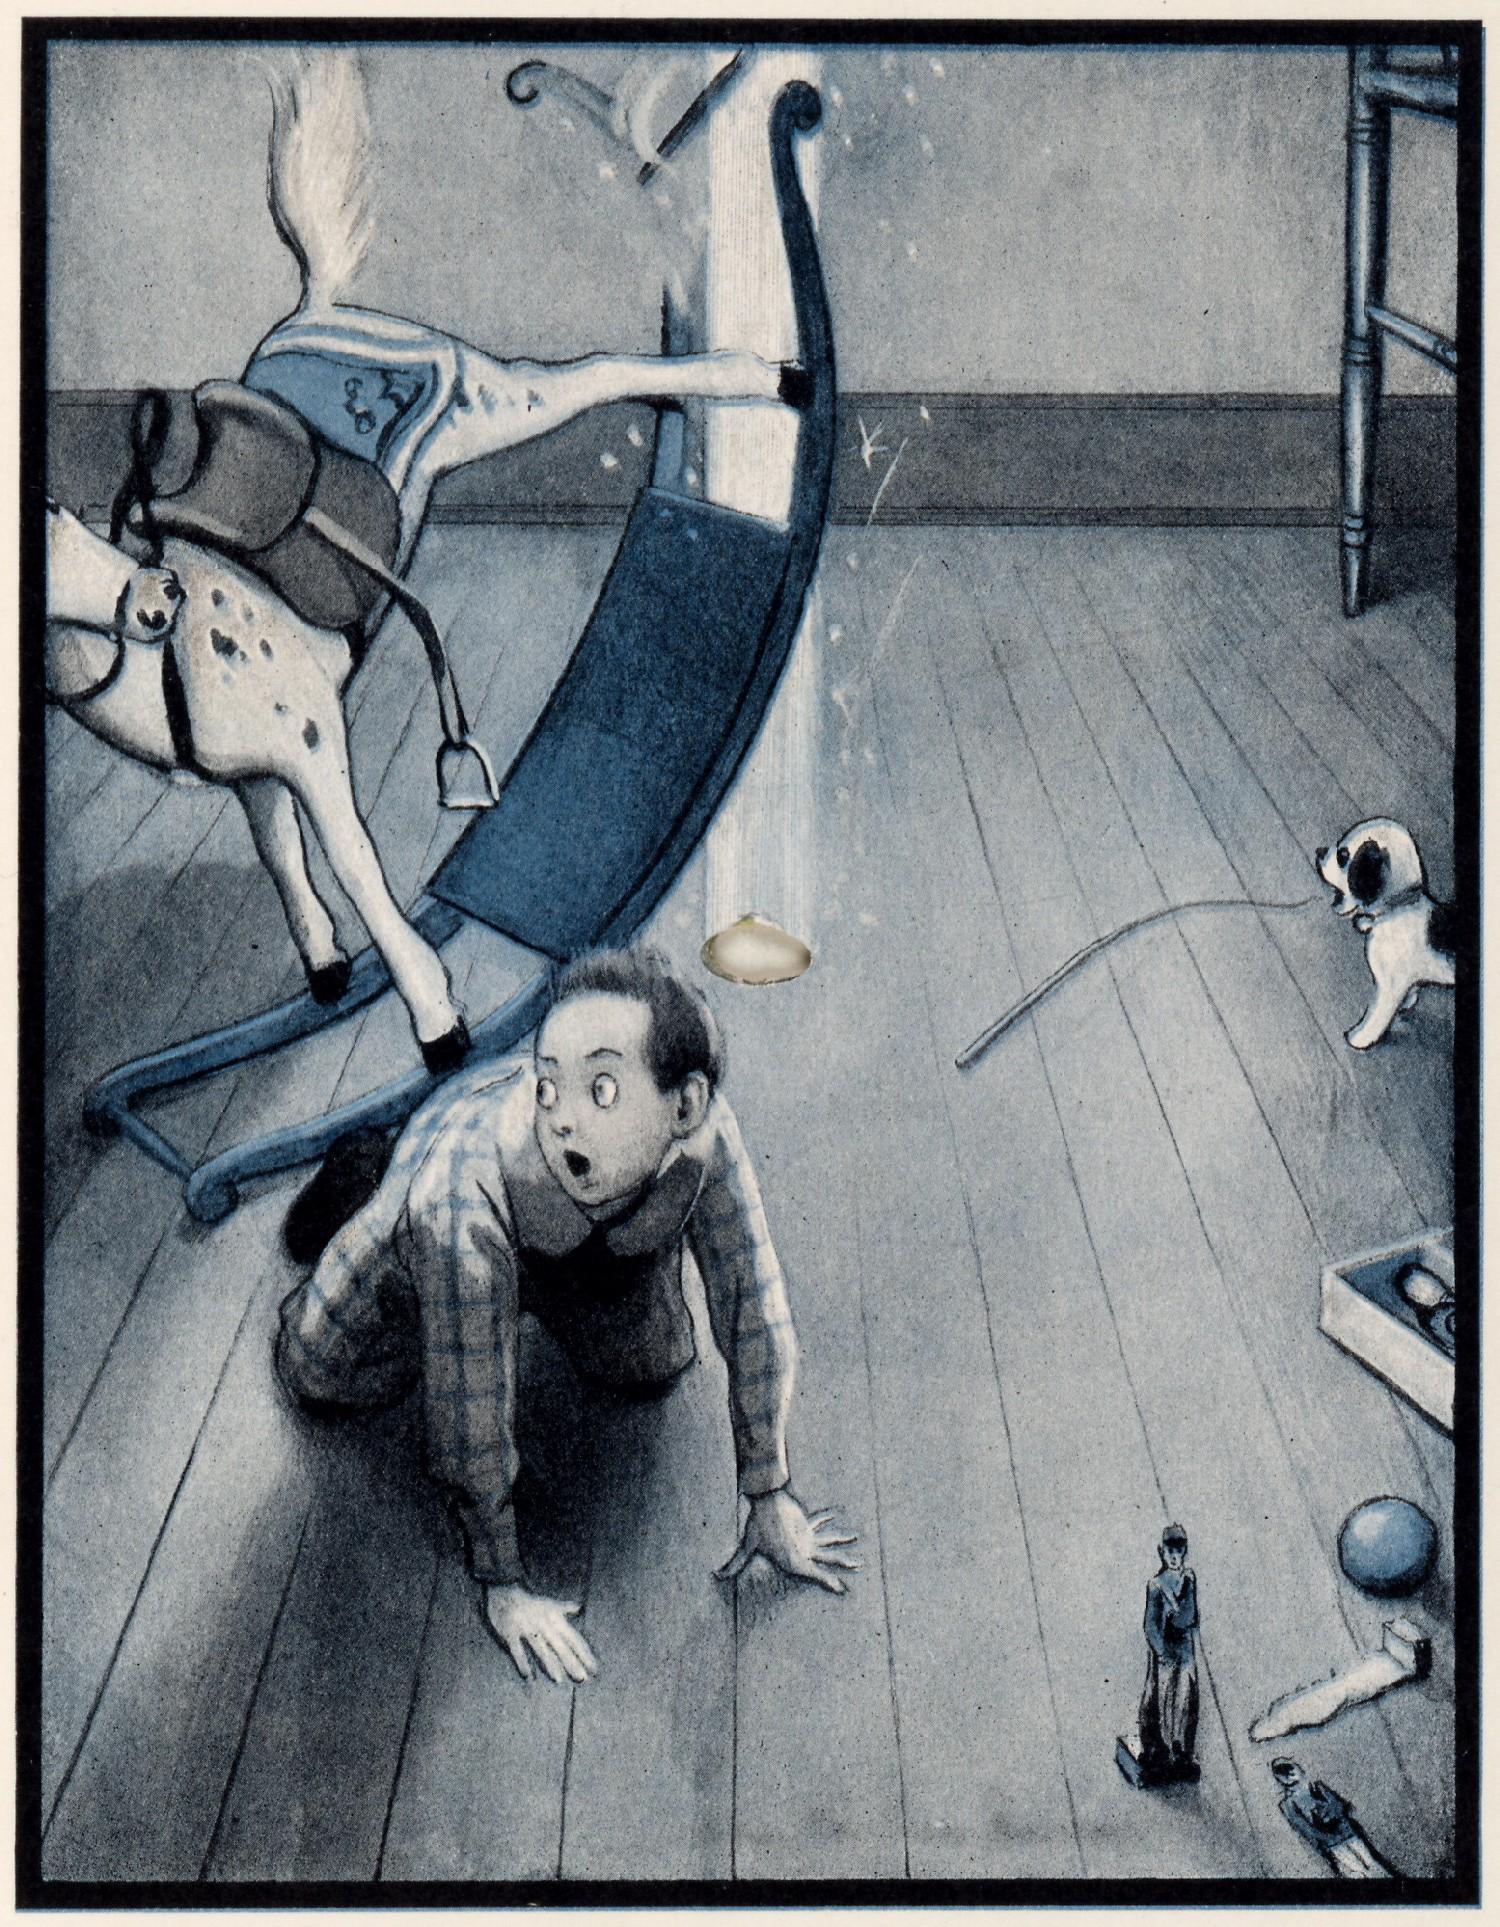 The Rocket Book - Une fabuleuse histoire illustrée pour enfants de 1912